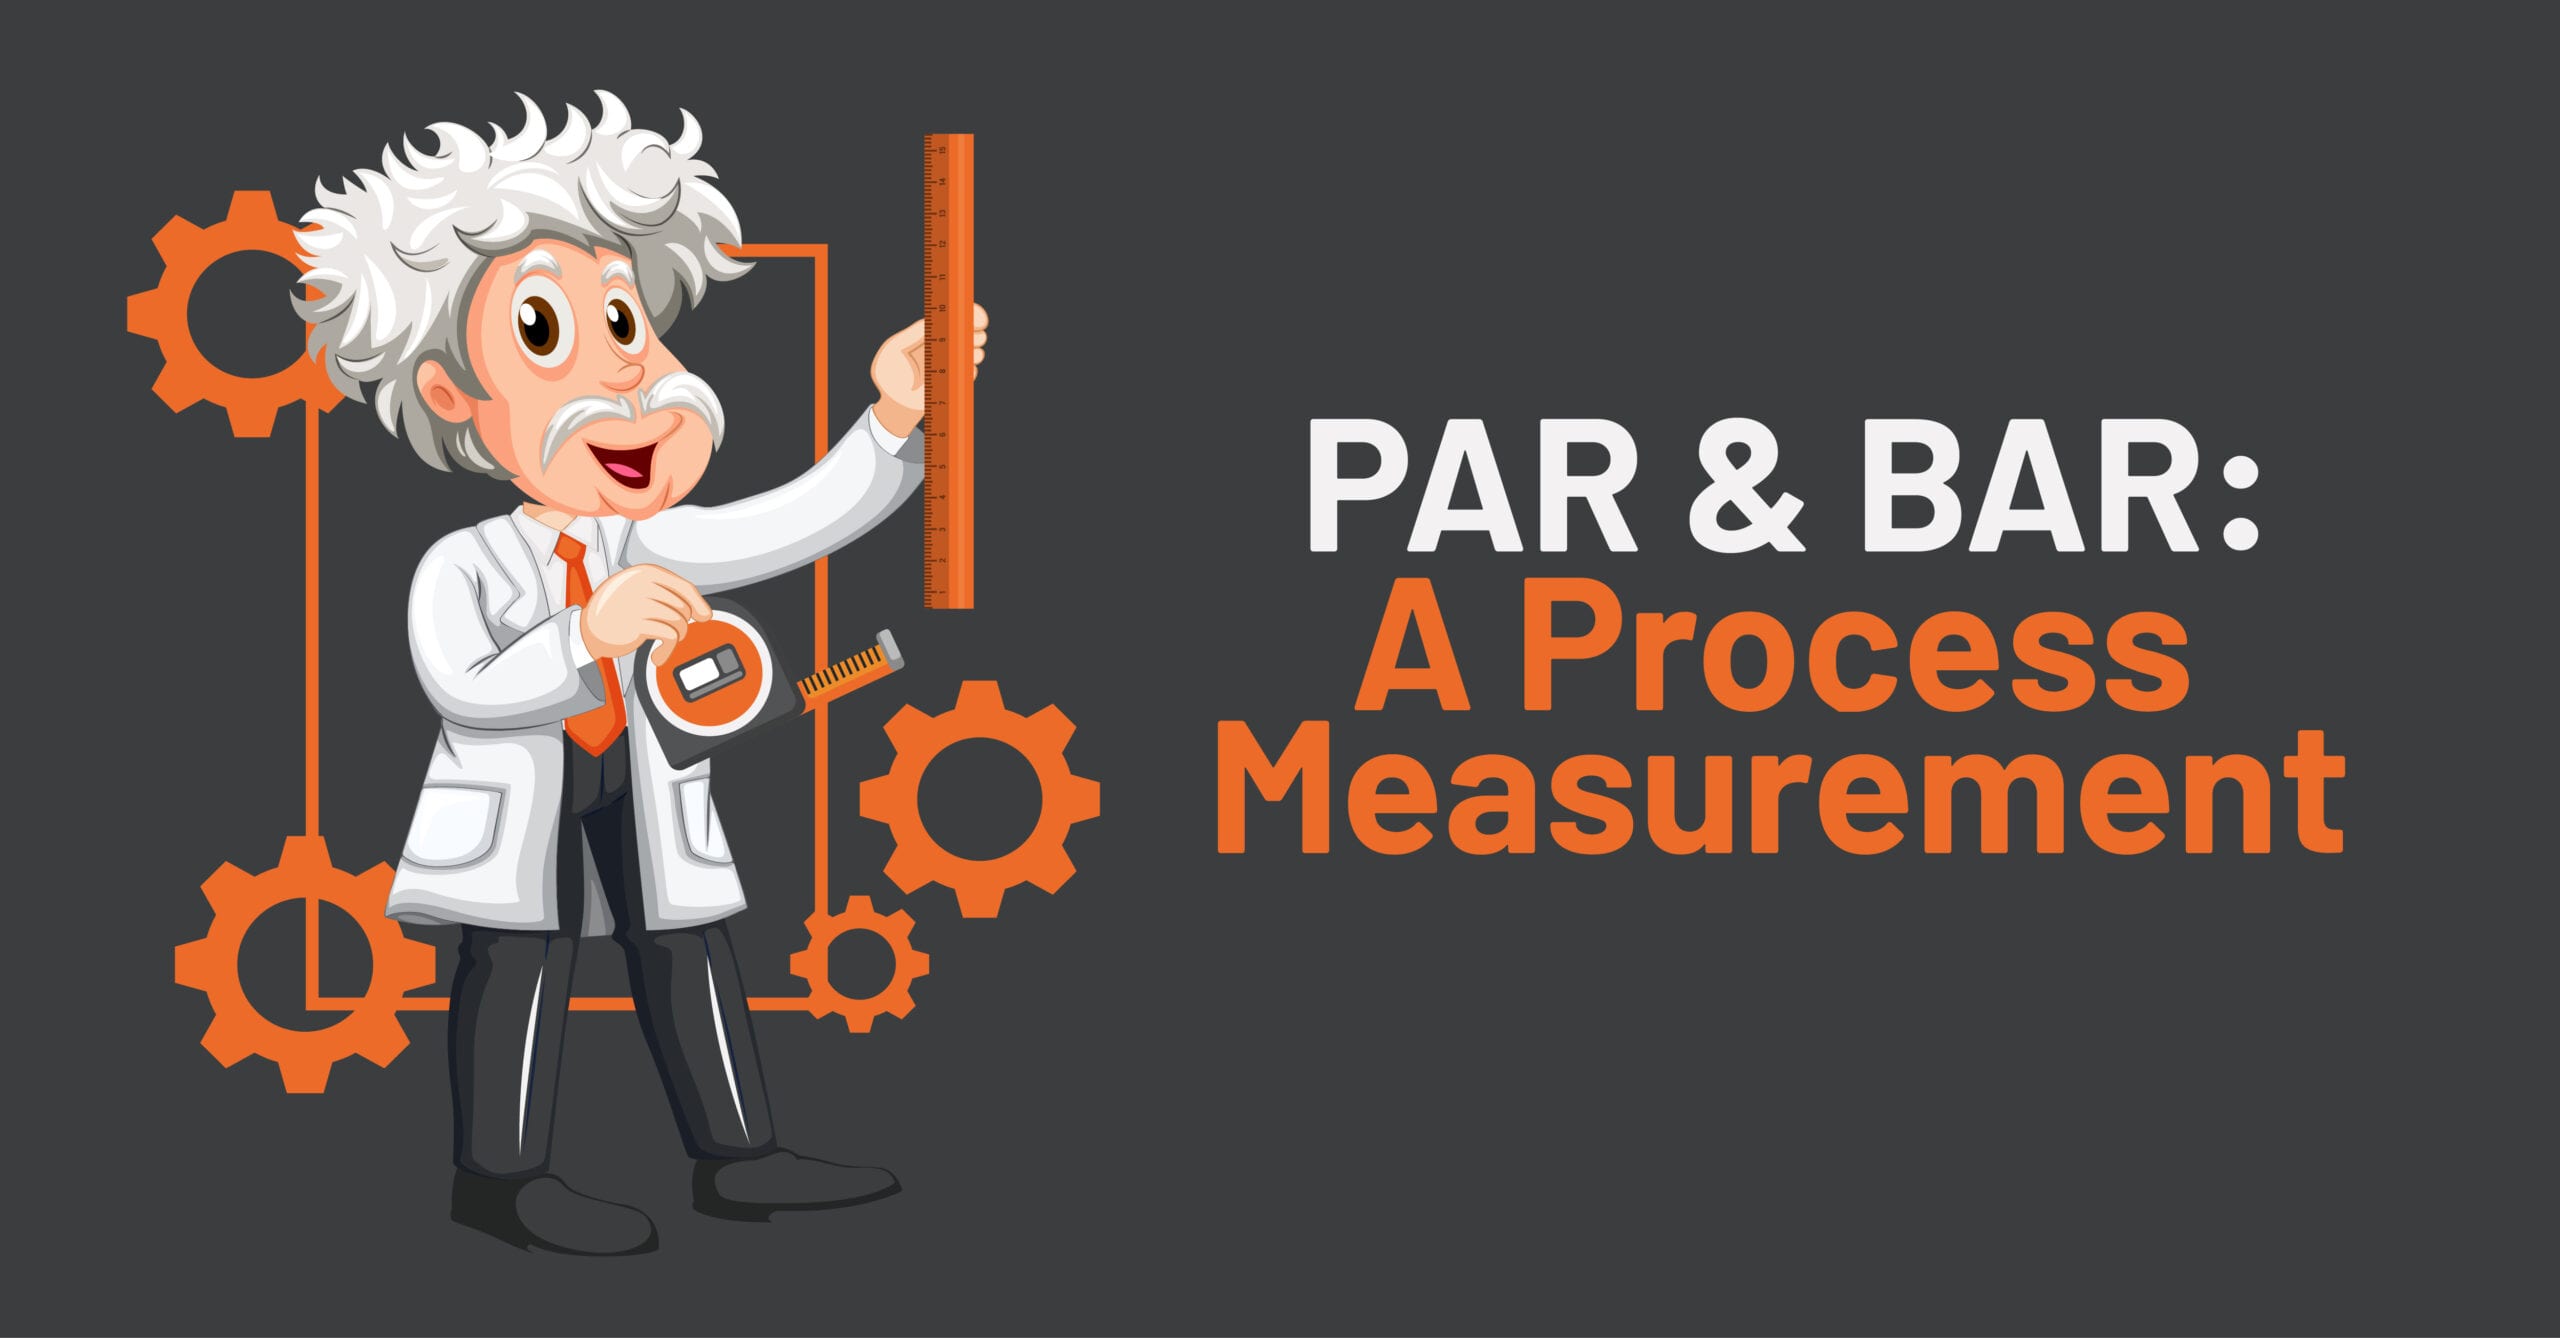 PAR & BAR: A Process Measurement.